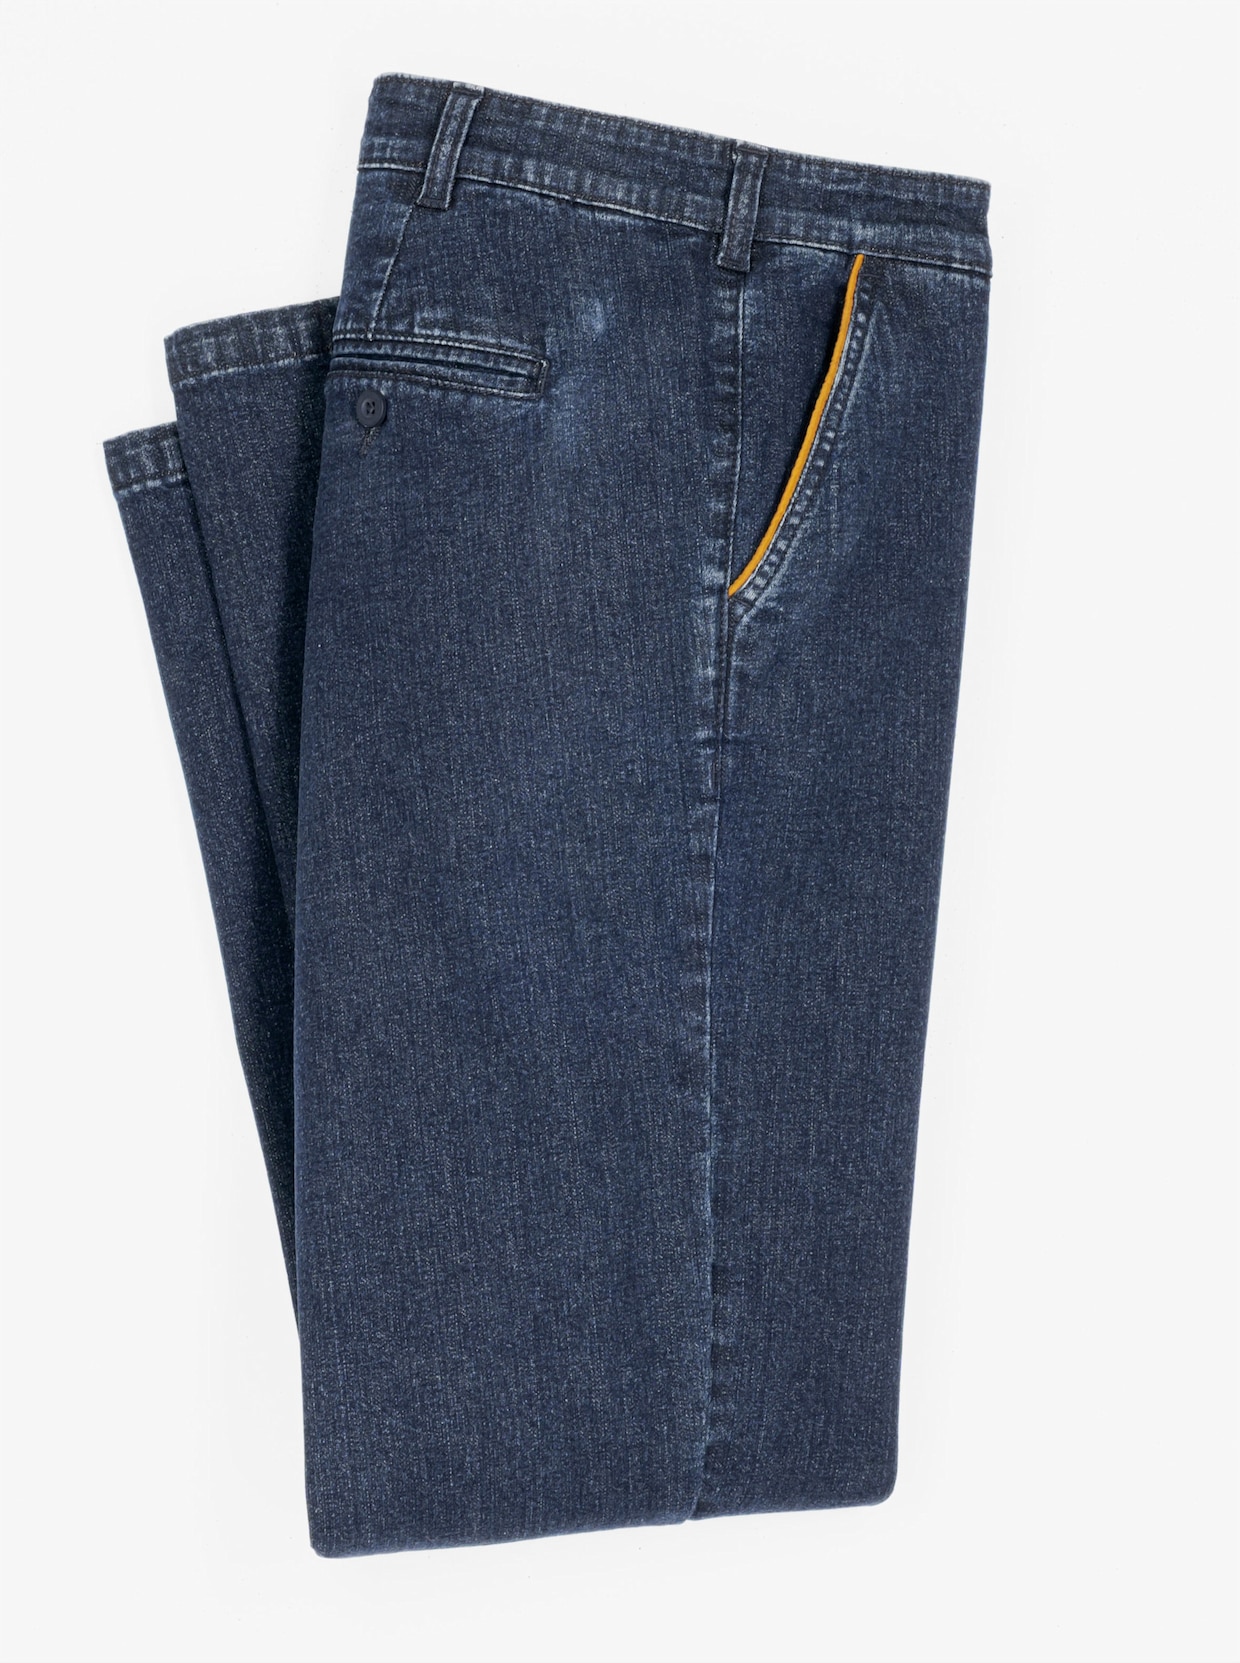 Jeans - dark blue